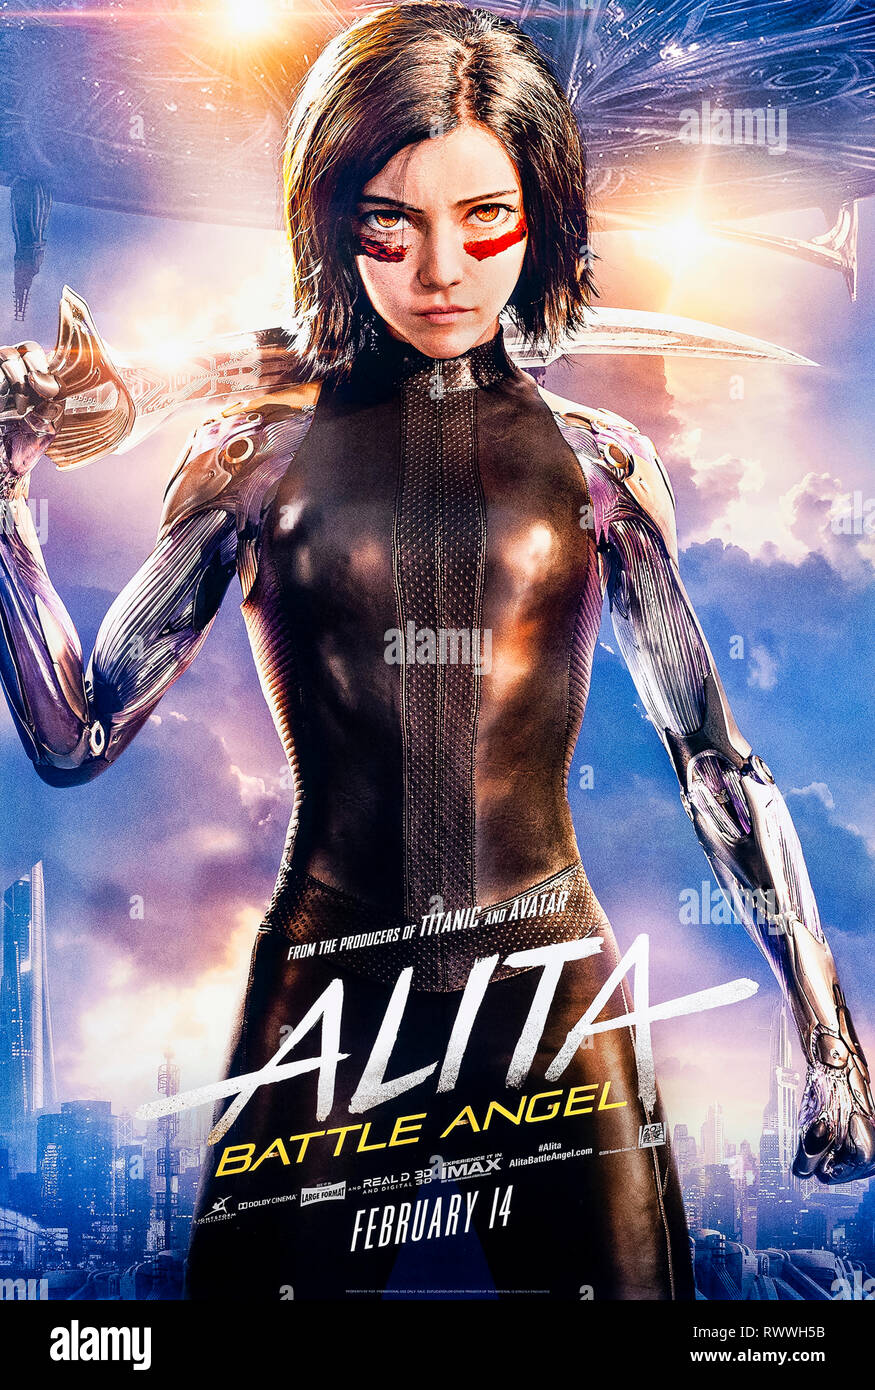 Alita: Battle Angel (2019), dirigida por Robert Rodriguez y protagonizada por Rosa Salazar, Christoph Waltz y Jennifer Connelly. Una mujer cyborg combate. Foto de stock